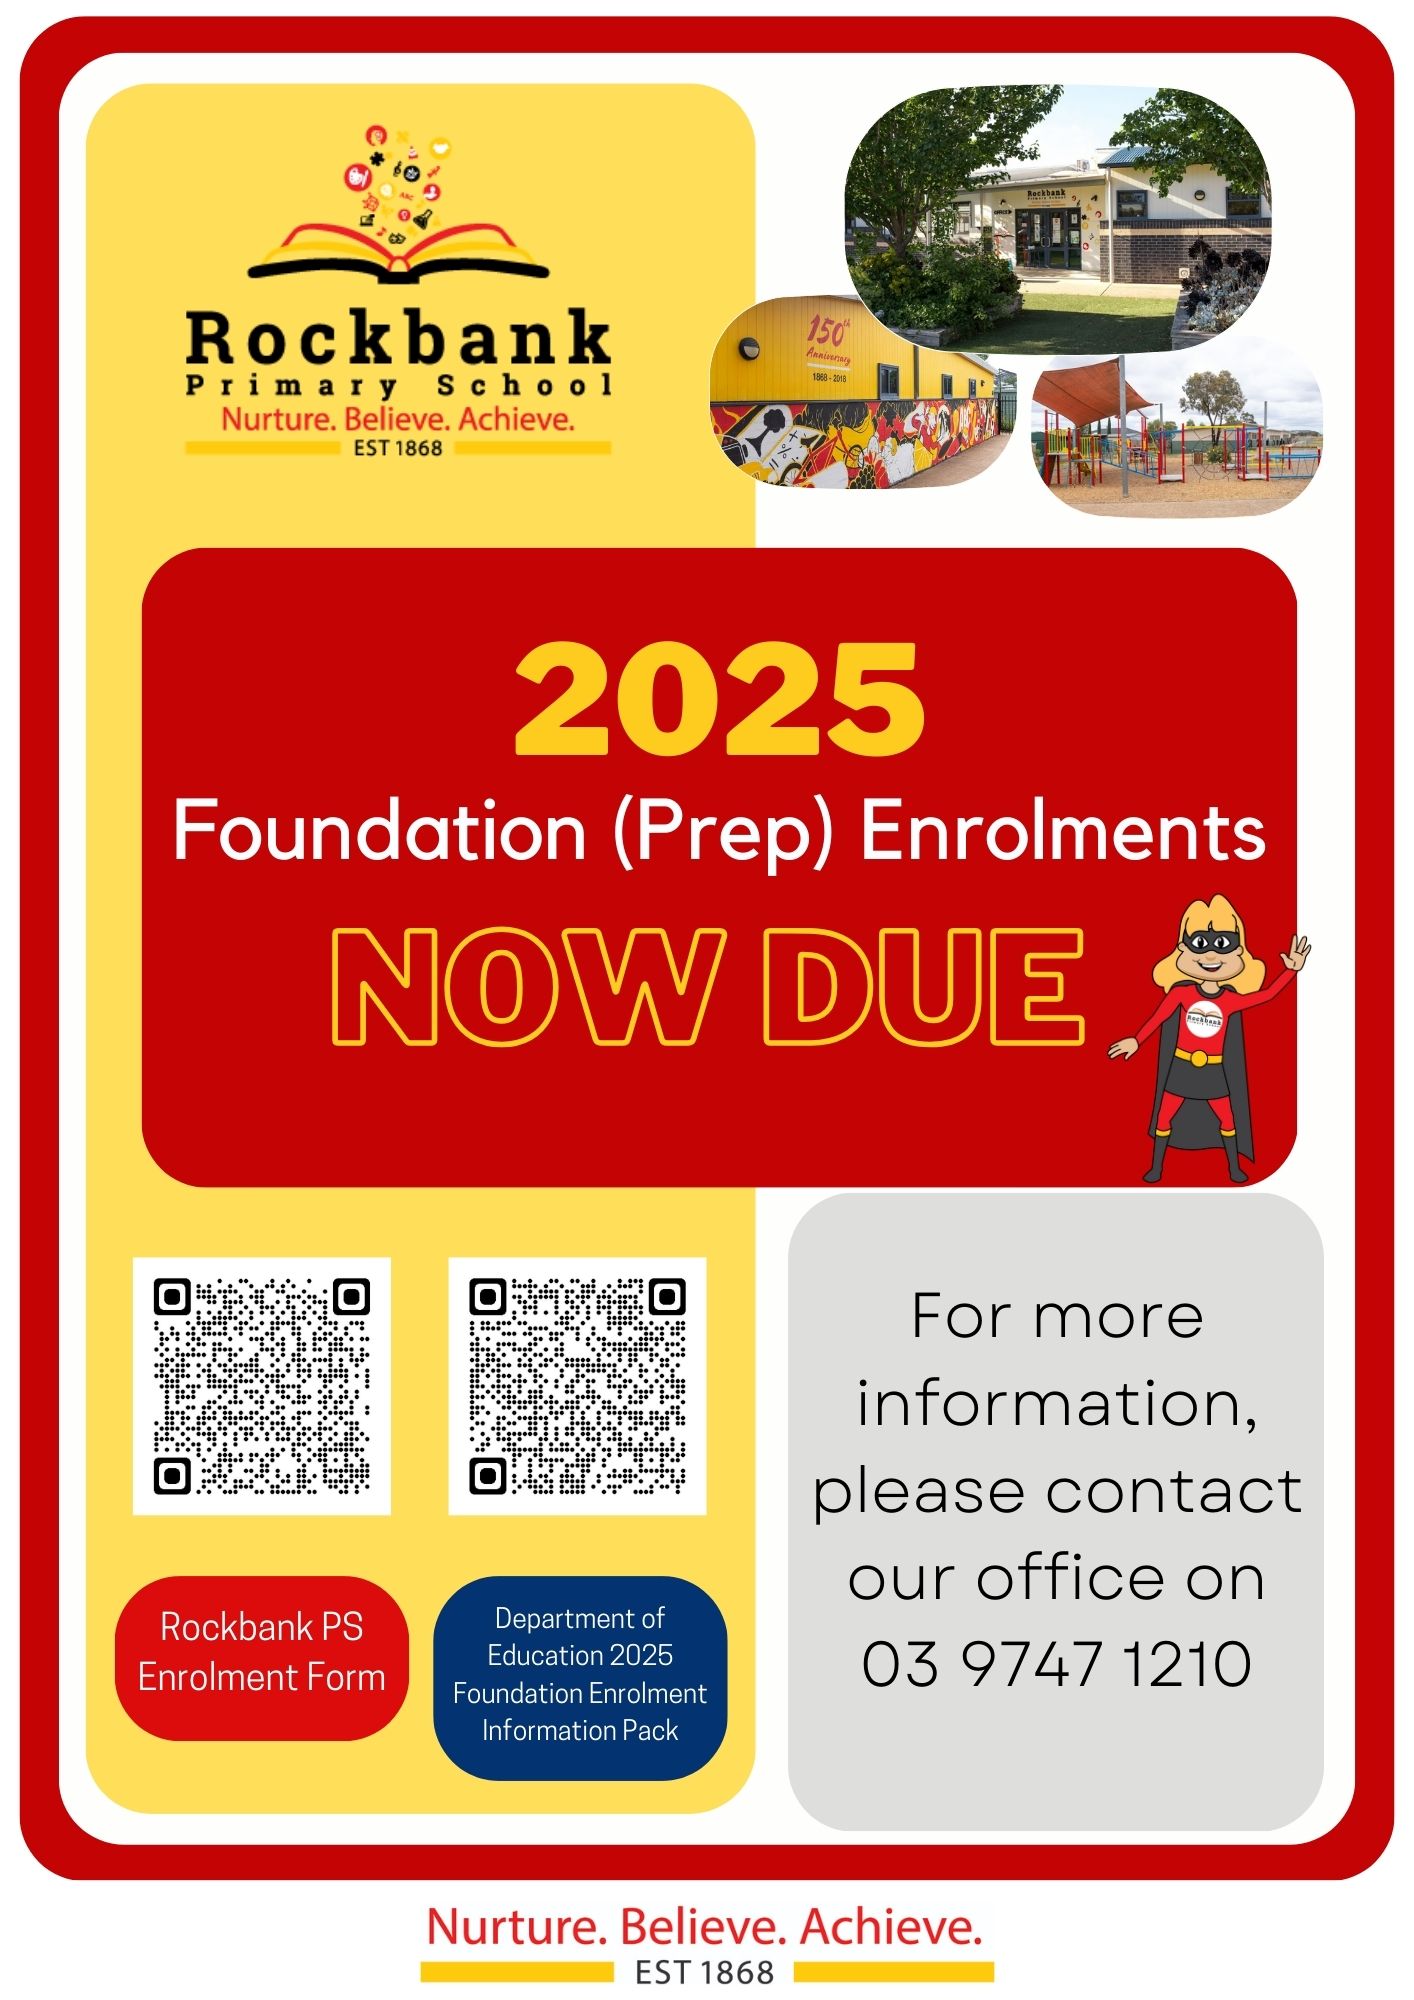 2025 Foundation Enrolments